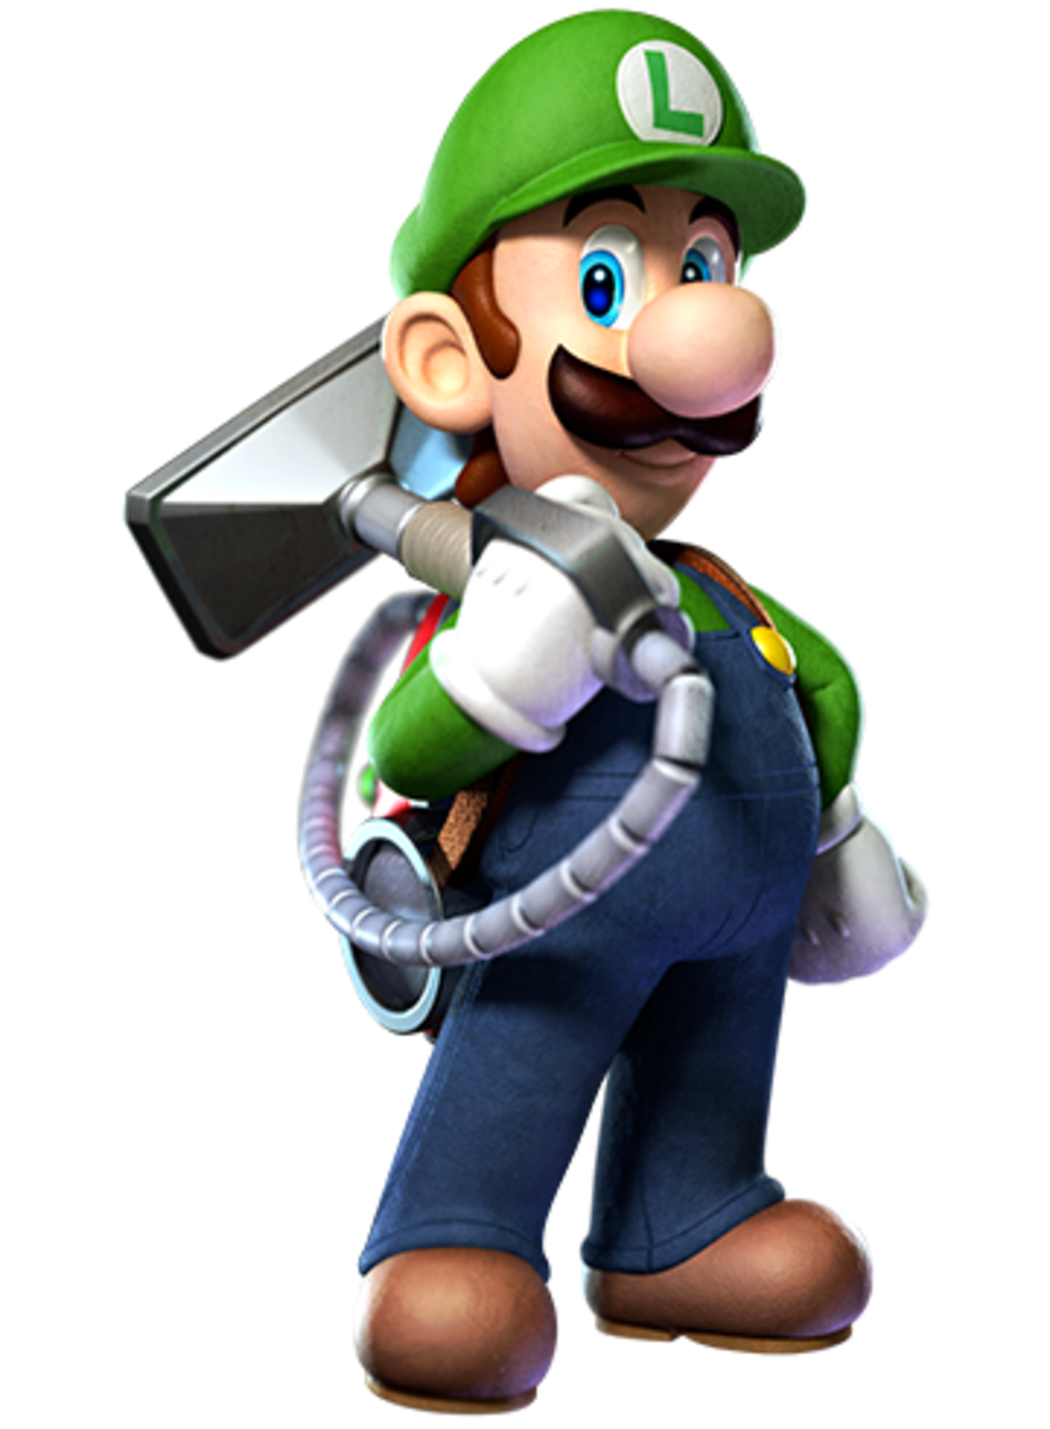 Regulación distorsionar Coordinar Luigi's Mansion: Dark Moon for Nintendo 3DS - Nintendo Official Site